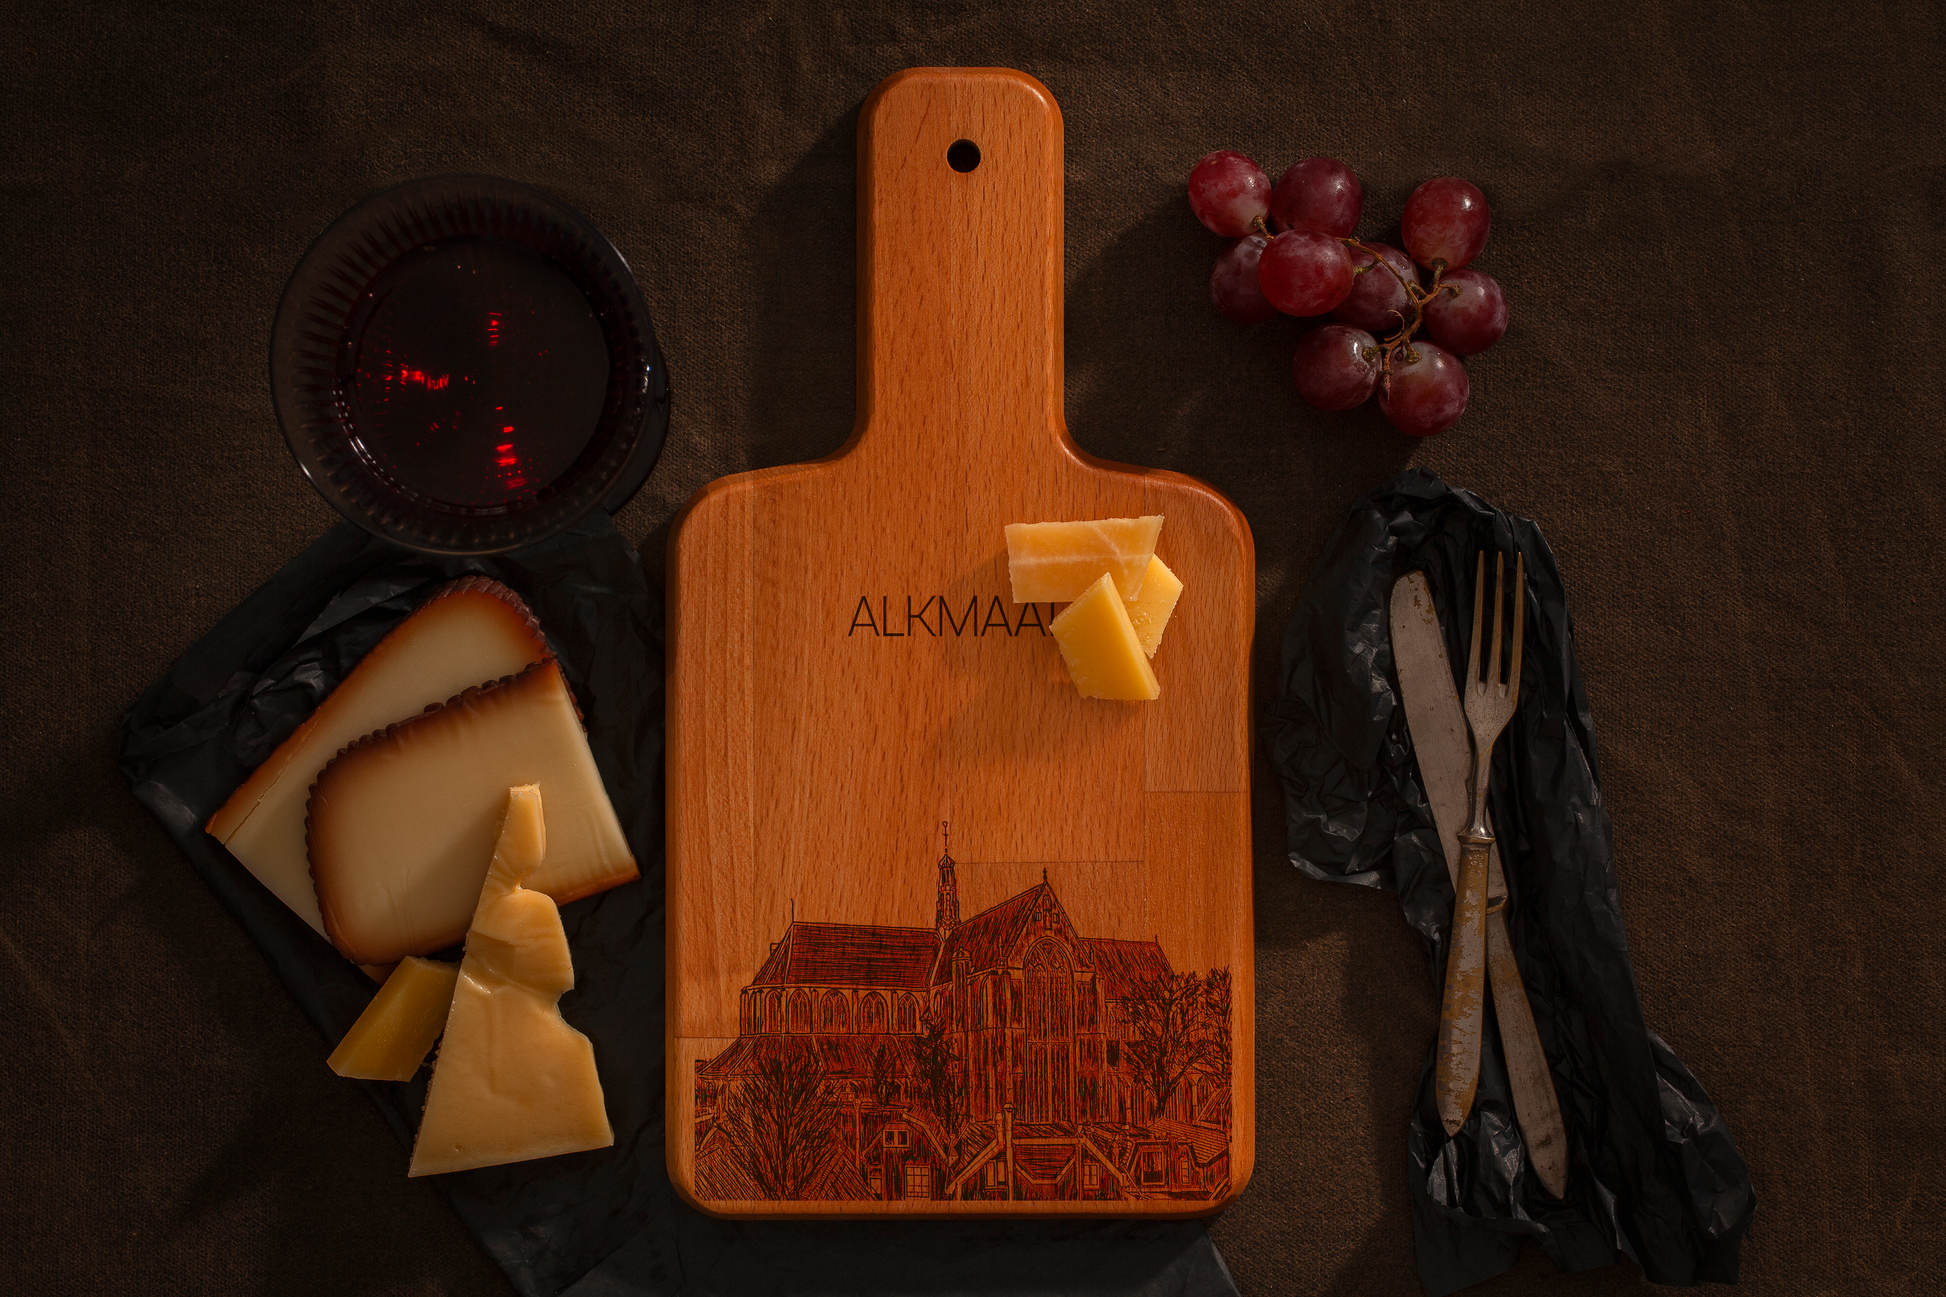 Alkmaar, Grote Kerk, cheese board, with cheese